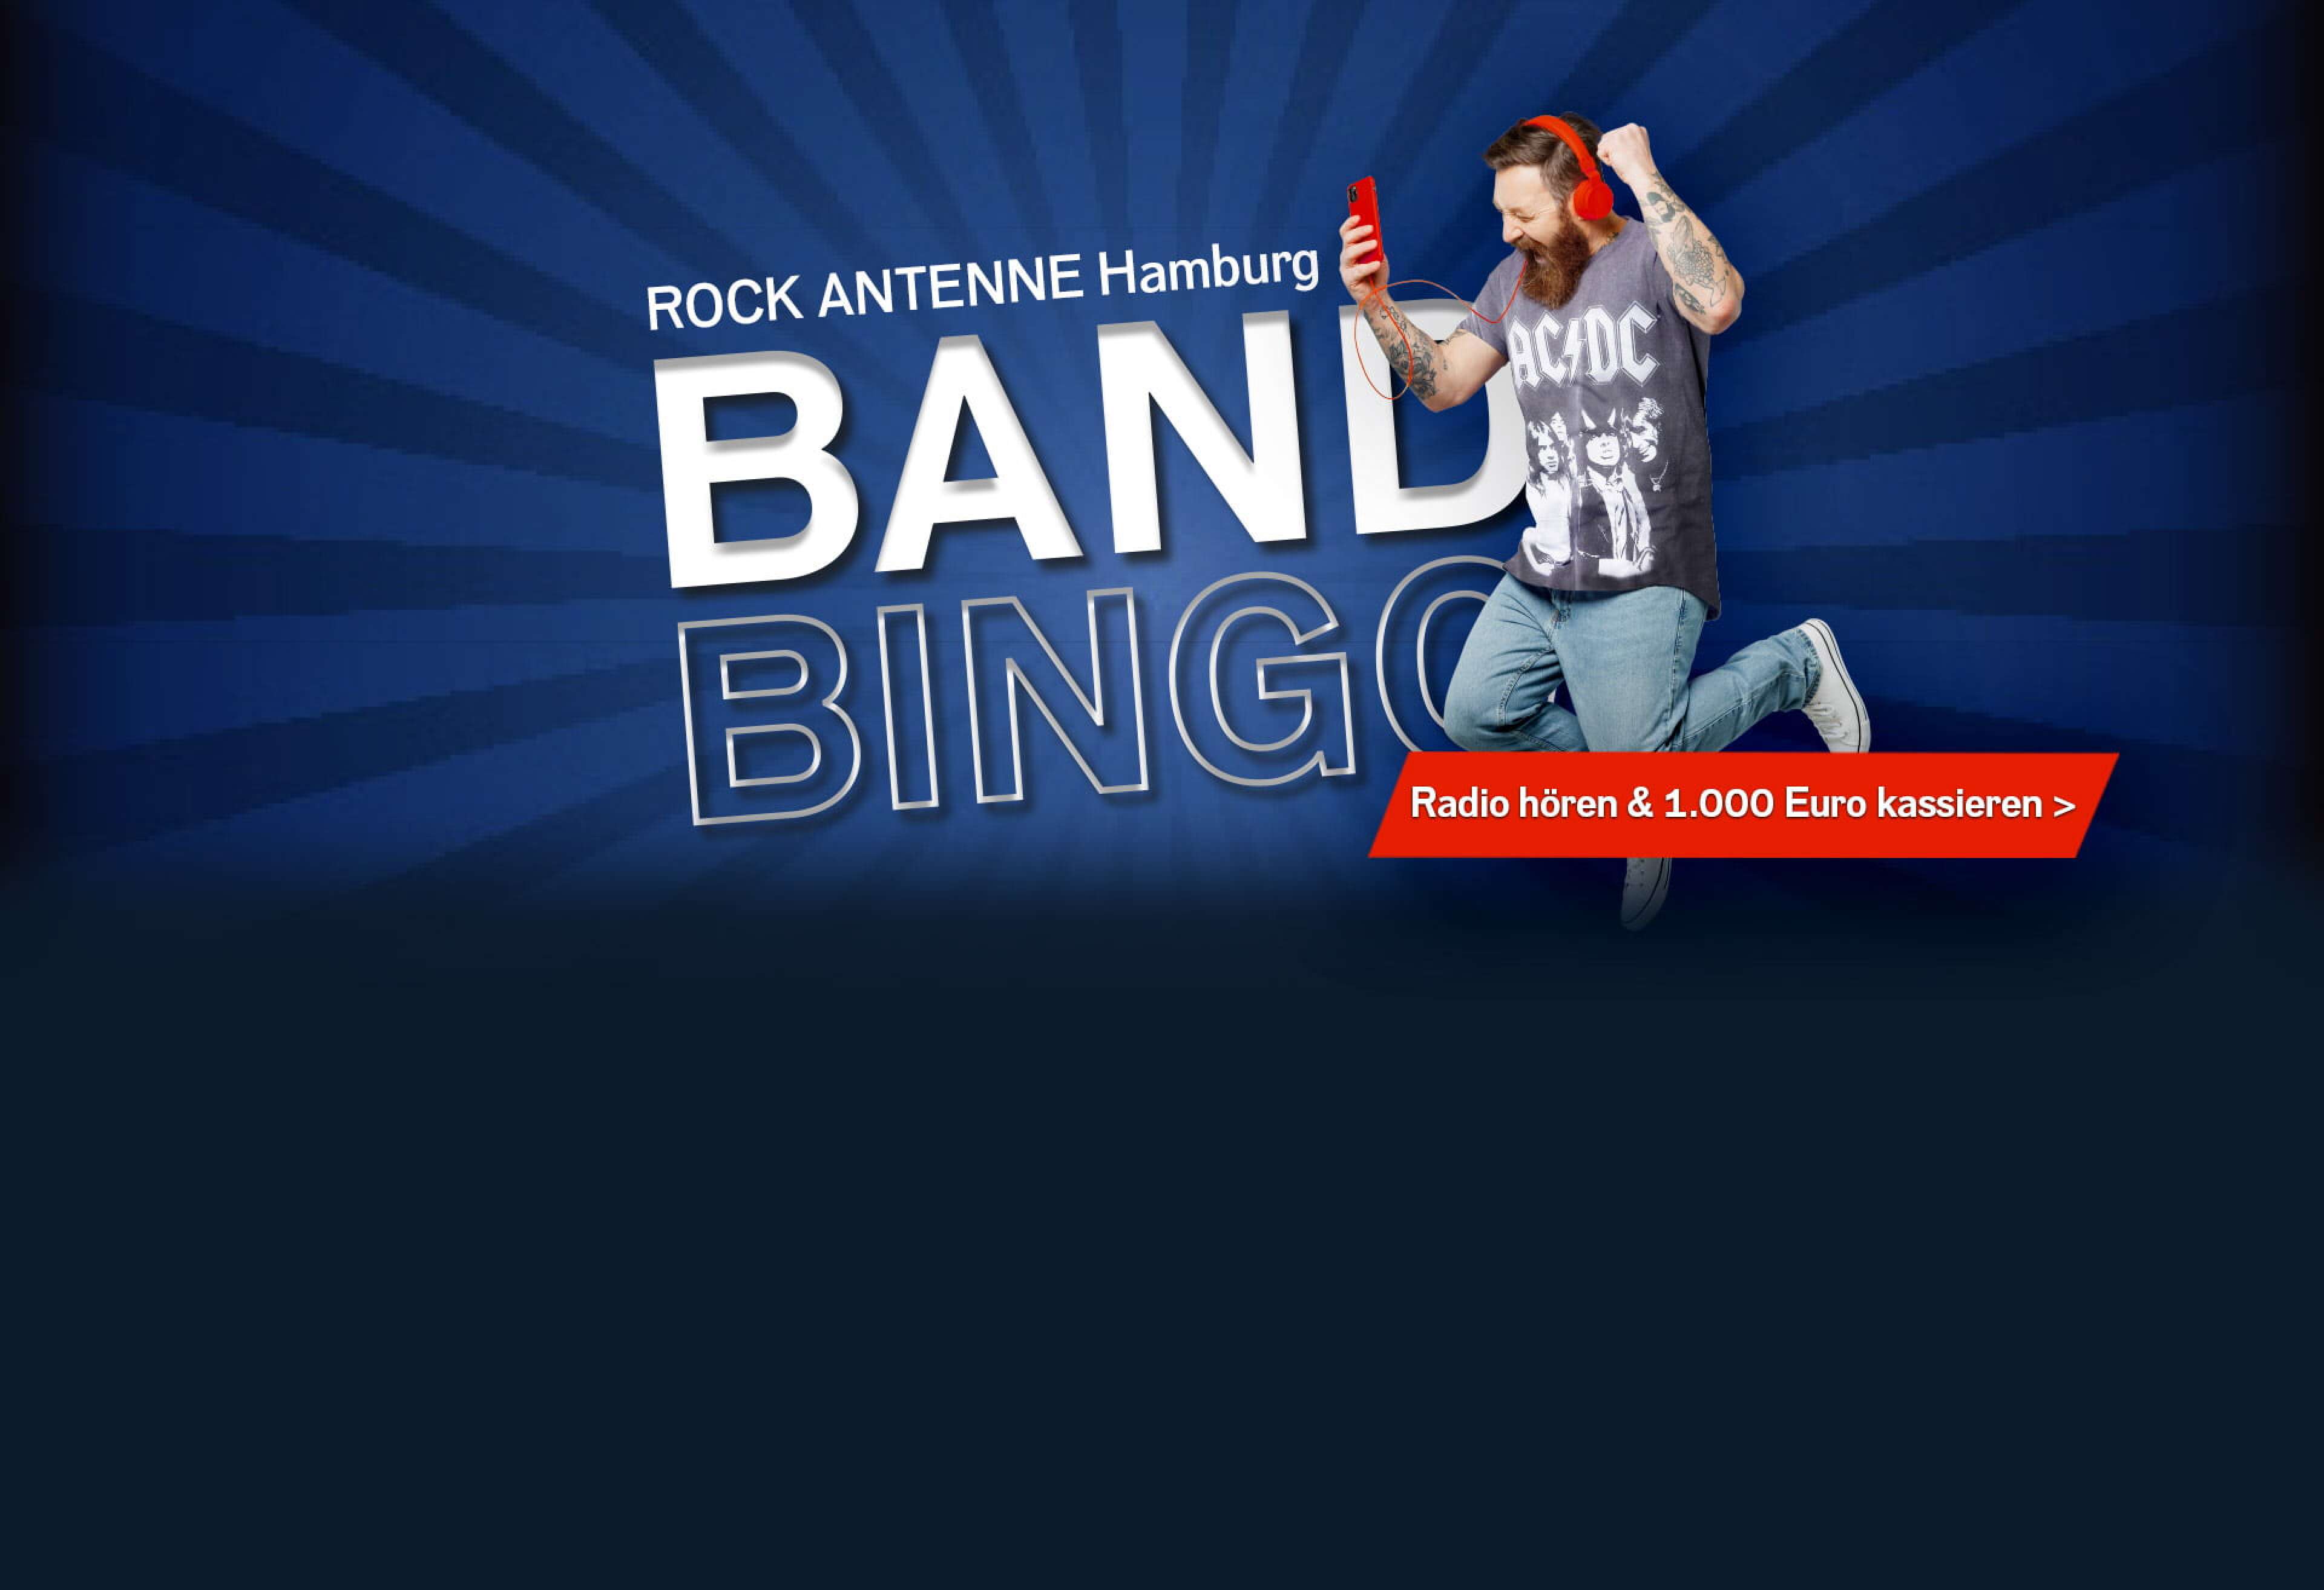 Ein jubelnder Mann mit AC/DC Shirt, Kopfhörern und Smartphone und dazu der Text "ROCK ANTENNE Hamburg Band Bingo - Radio hören und 1.000 Euro kassieren"